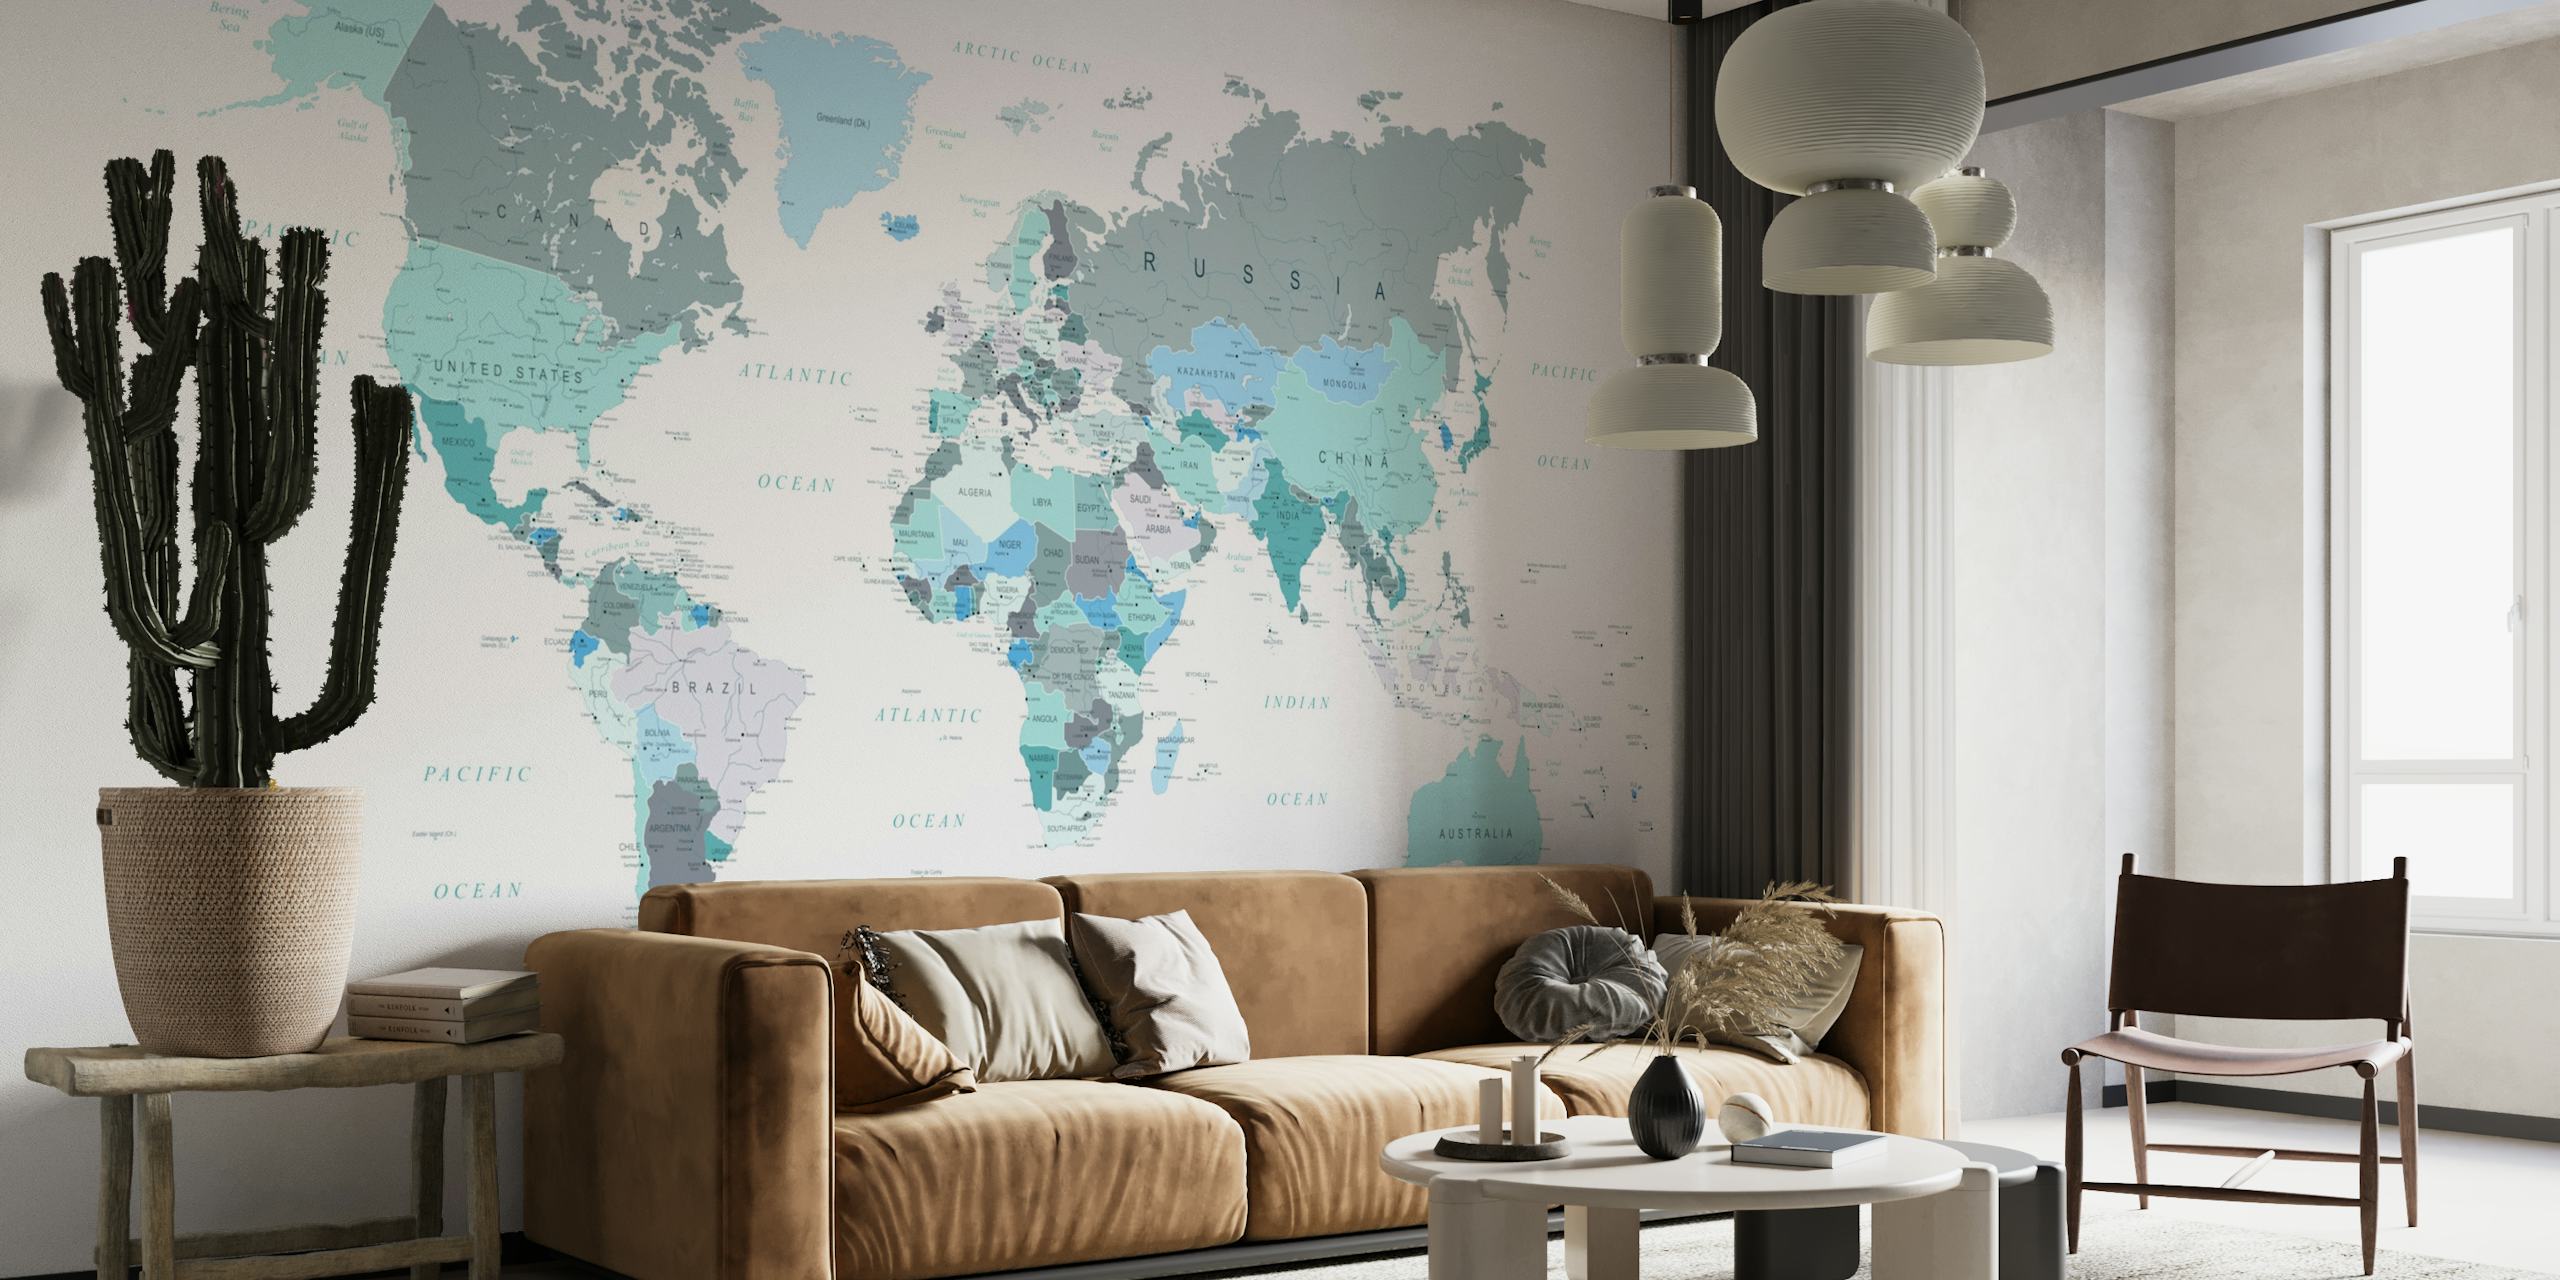 World Map Teal papel pintado